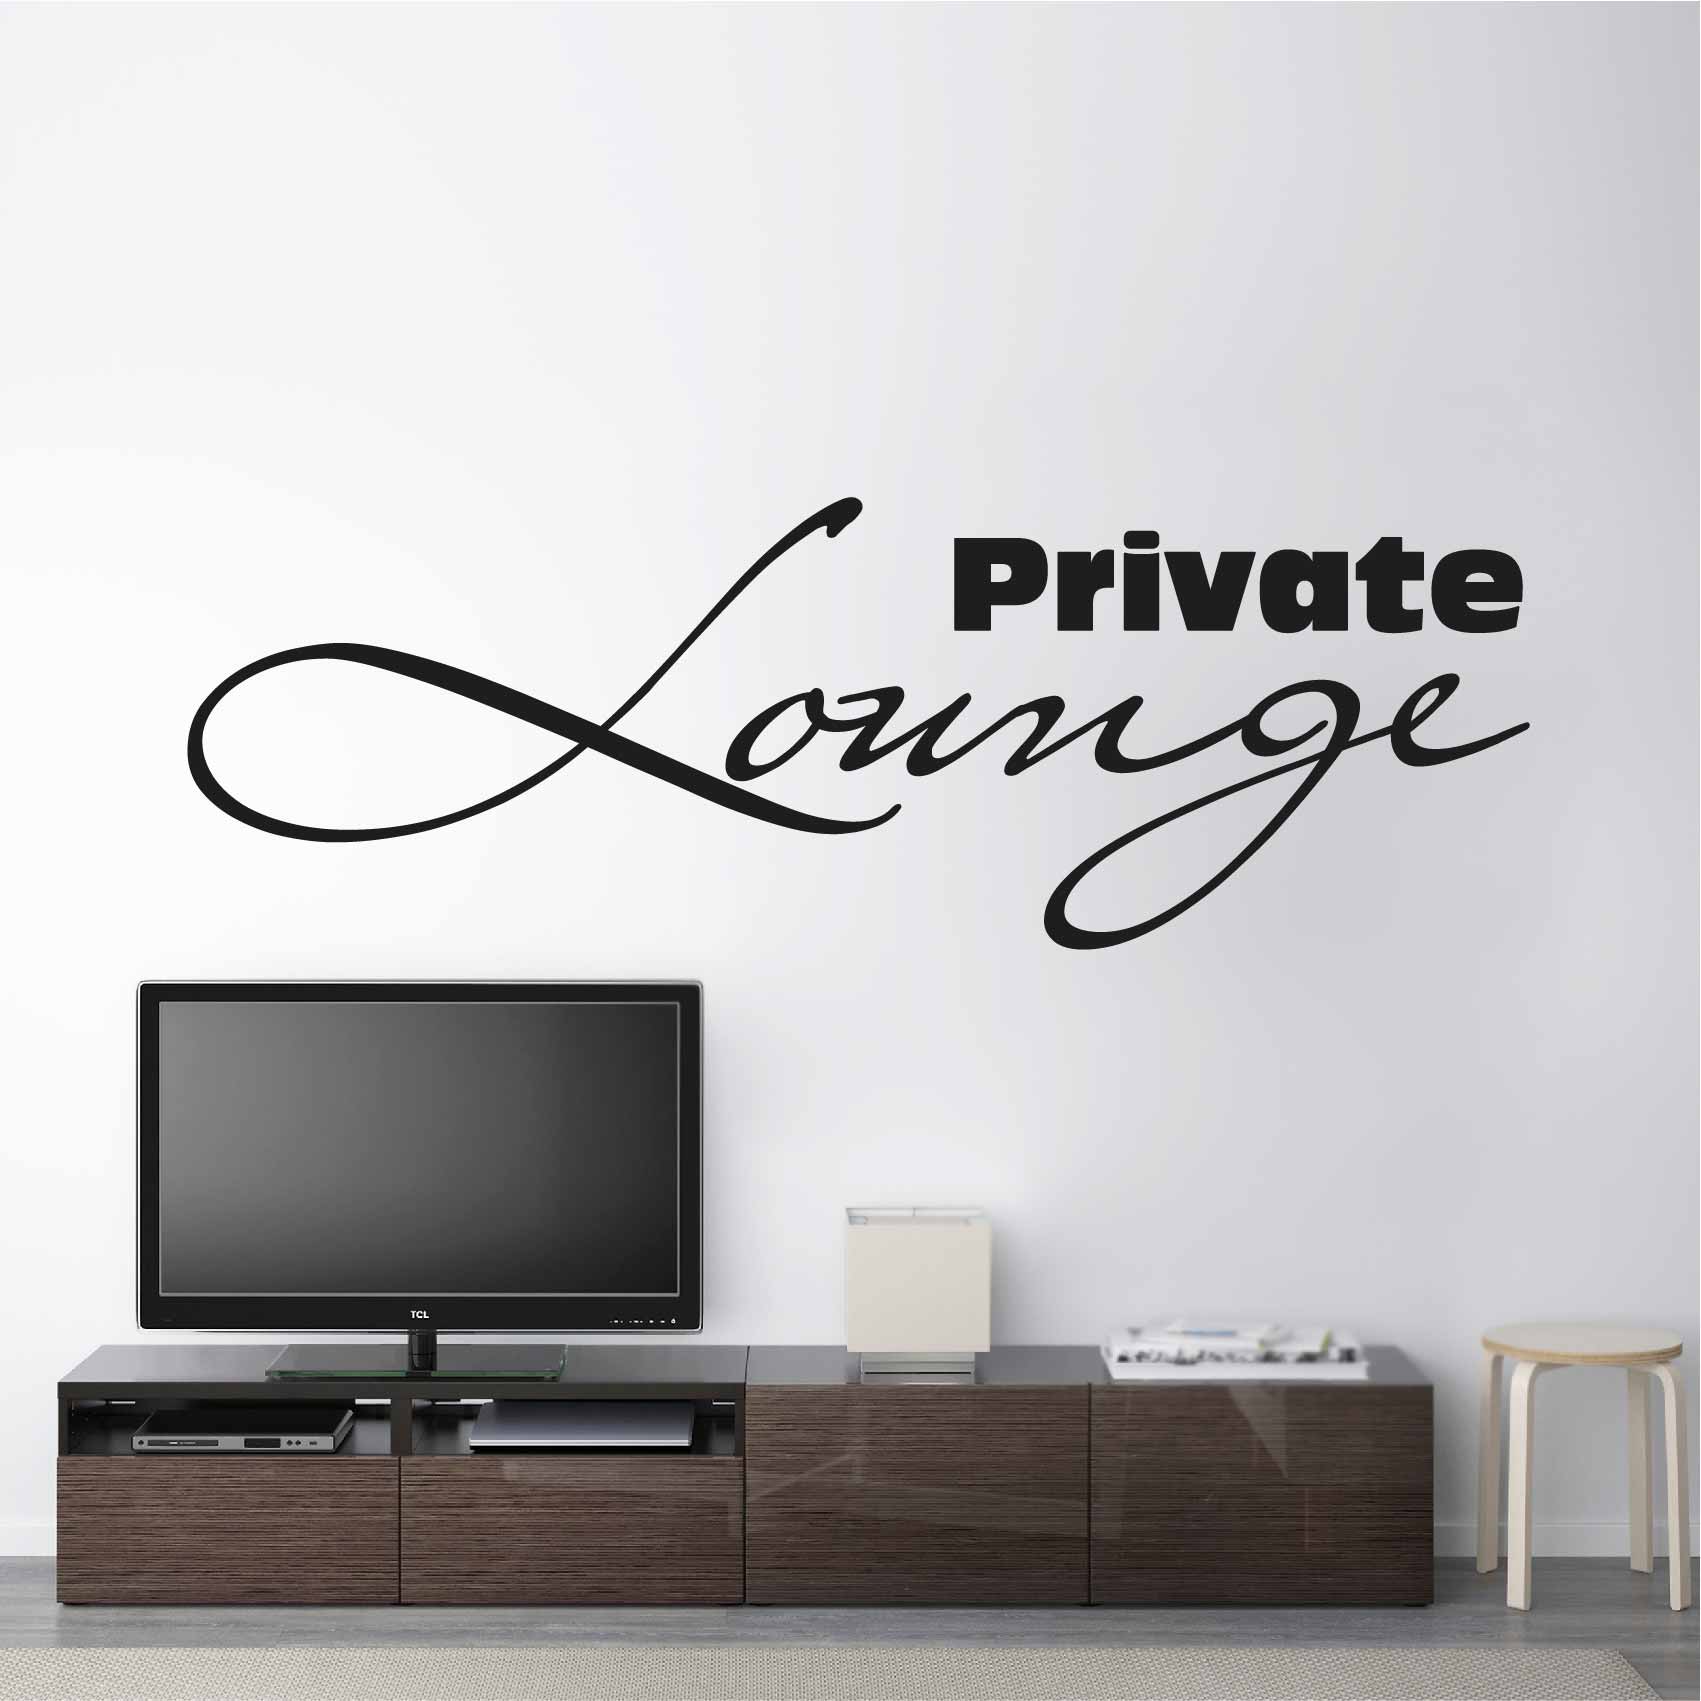 Stickers Private Lounge Salon